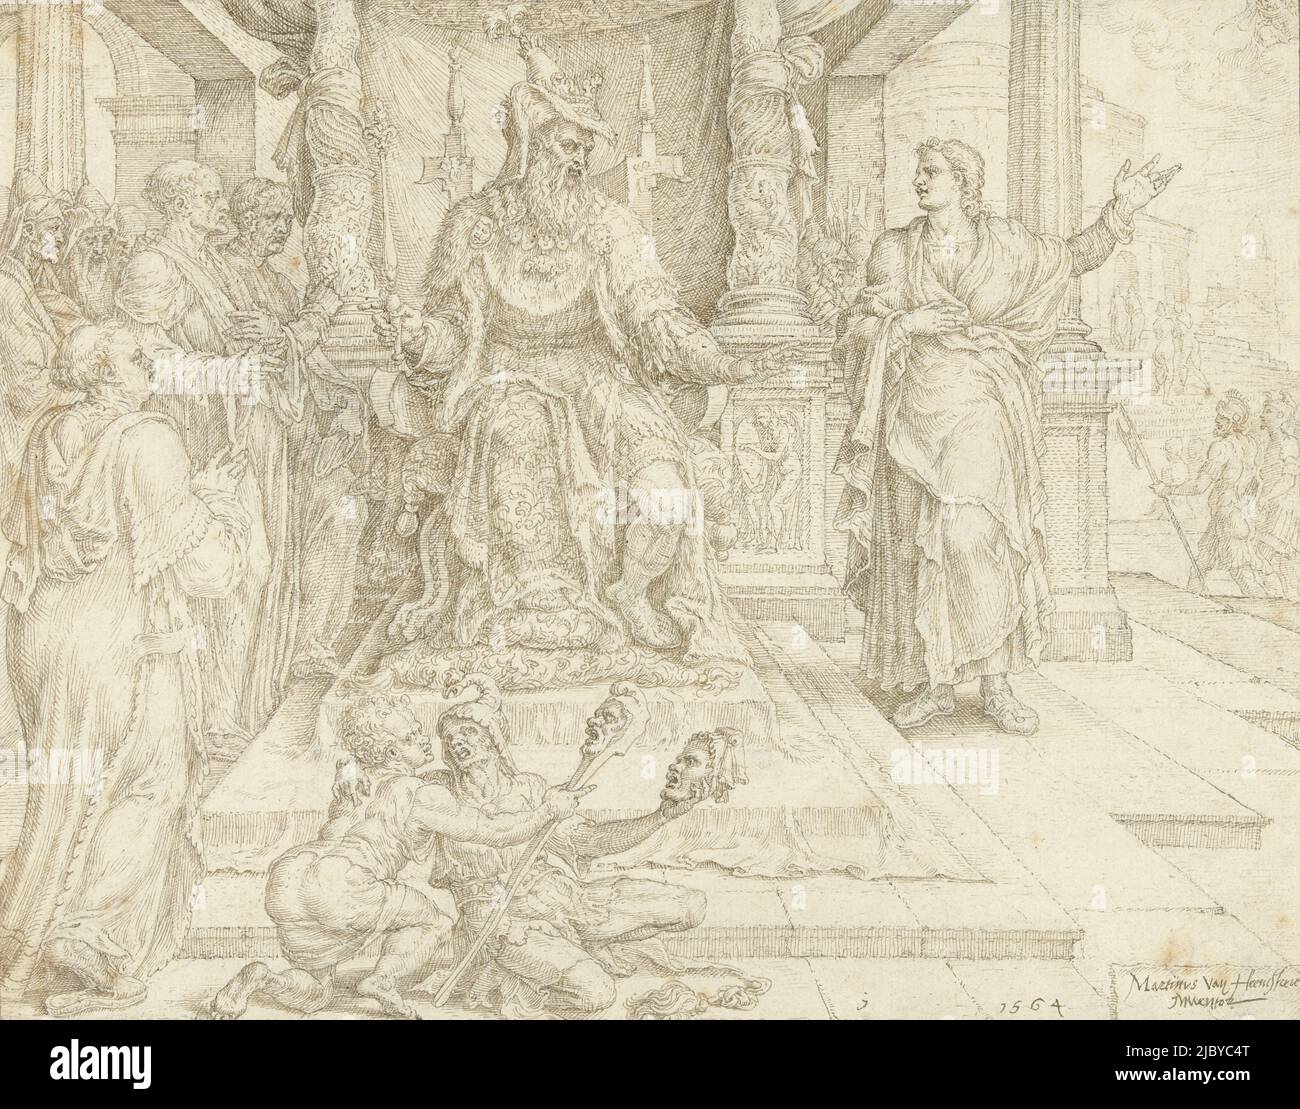 Daniel dit à Cyrus qu'il ne peut adorer que le Dieu vivant et pas d'idoles faites par l'homme, Maarten van Heemskerck, 1564, le roi Cyrus est assis sur un trône avec des colonnes tournées. Au premier plan, deux fous, l'un avec un bâton de jester et l'autre avec un masque (Daniel, Apocryphe 4, 5). Design pour une impression., dessinateur: Maarten van Heemskerck, 1564, papier, stylo, h 196 mm × l 250 mm Banque D'Images